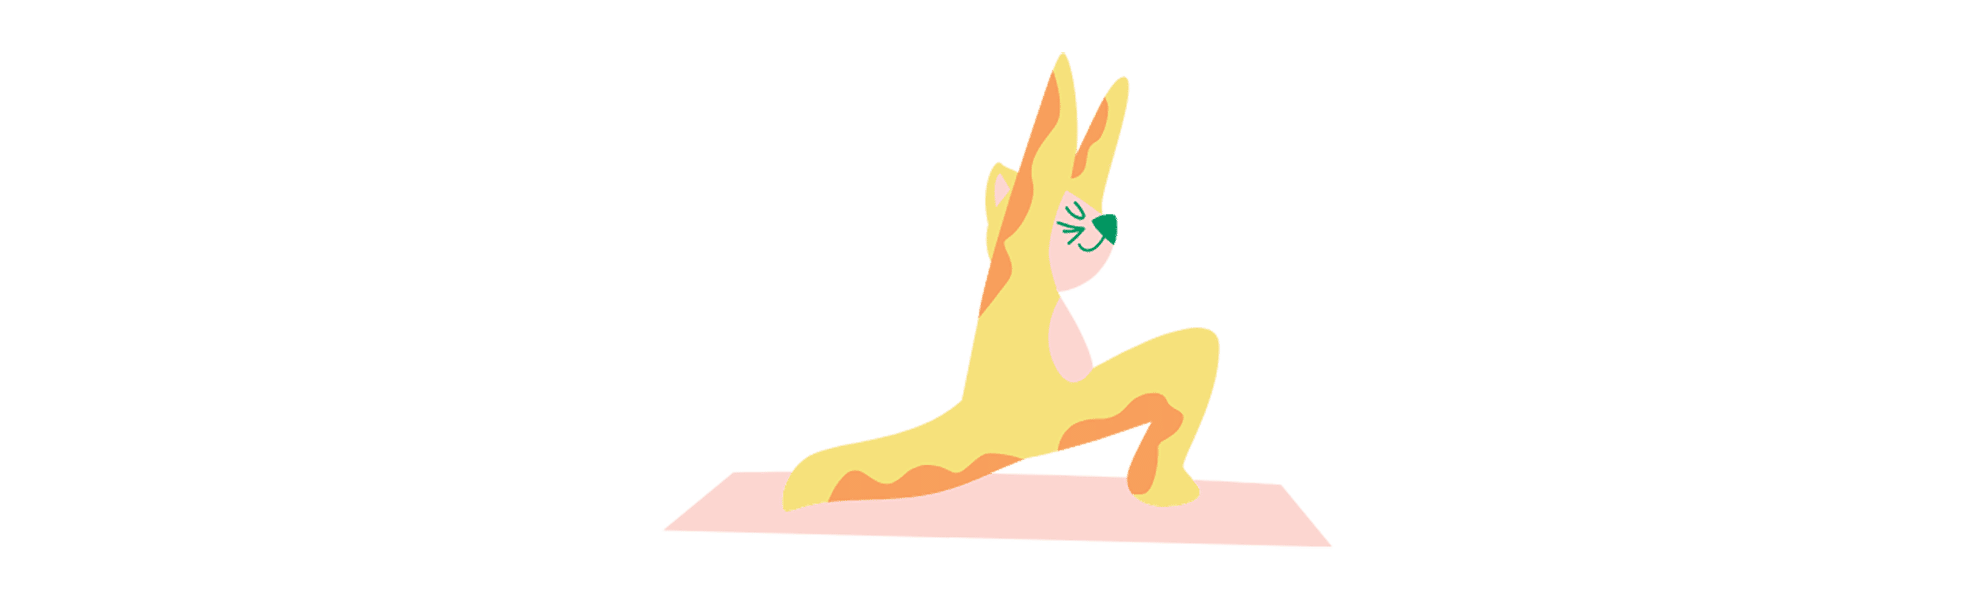 Yoga para niños, la nueva moda entre mamás